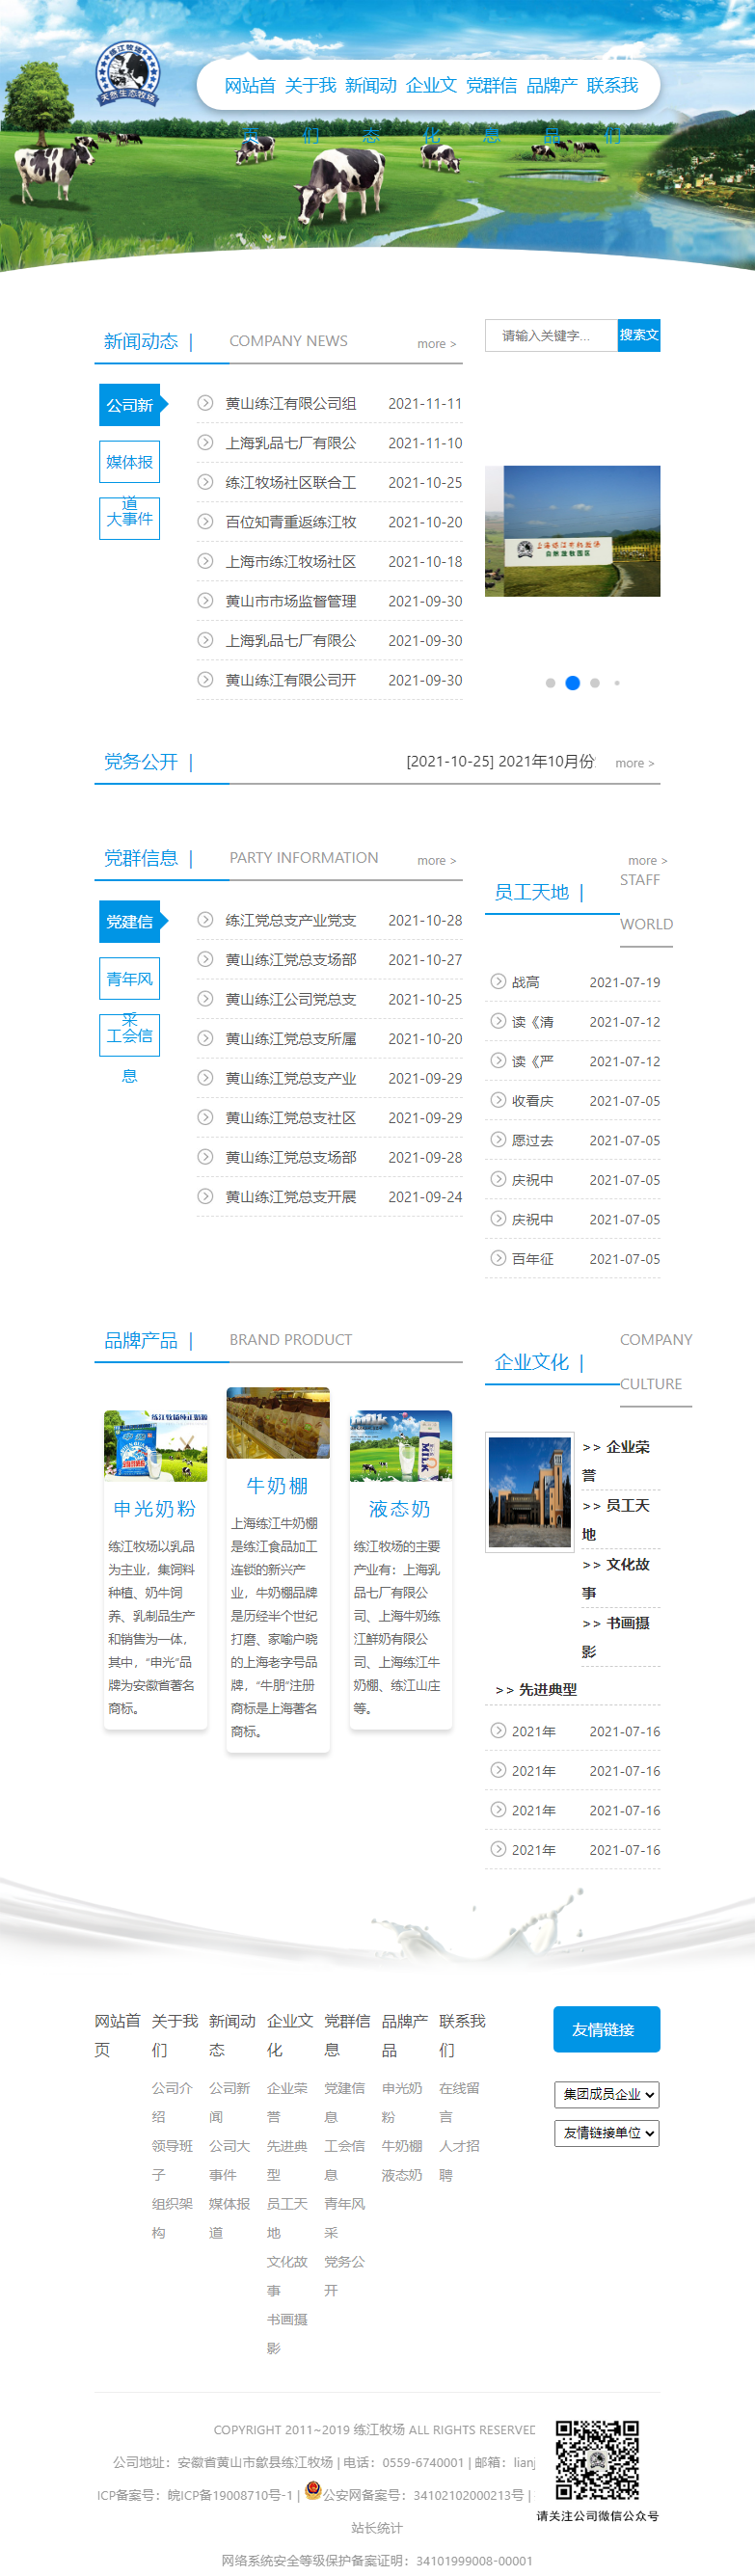 上海牛奶集团黄山练江有限公司网站案例